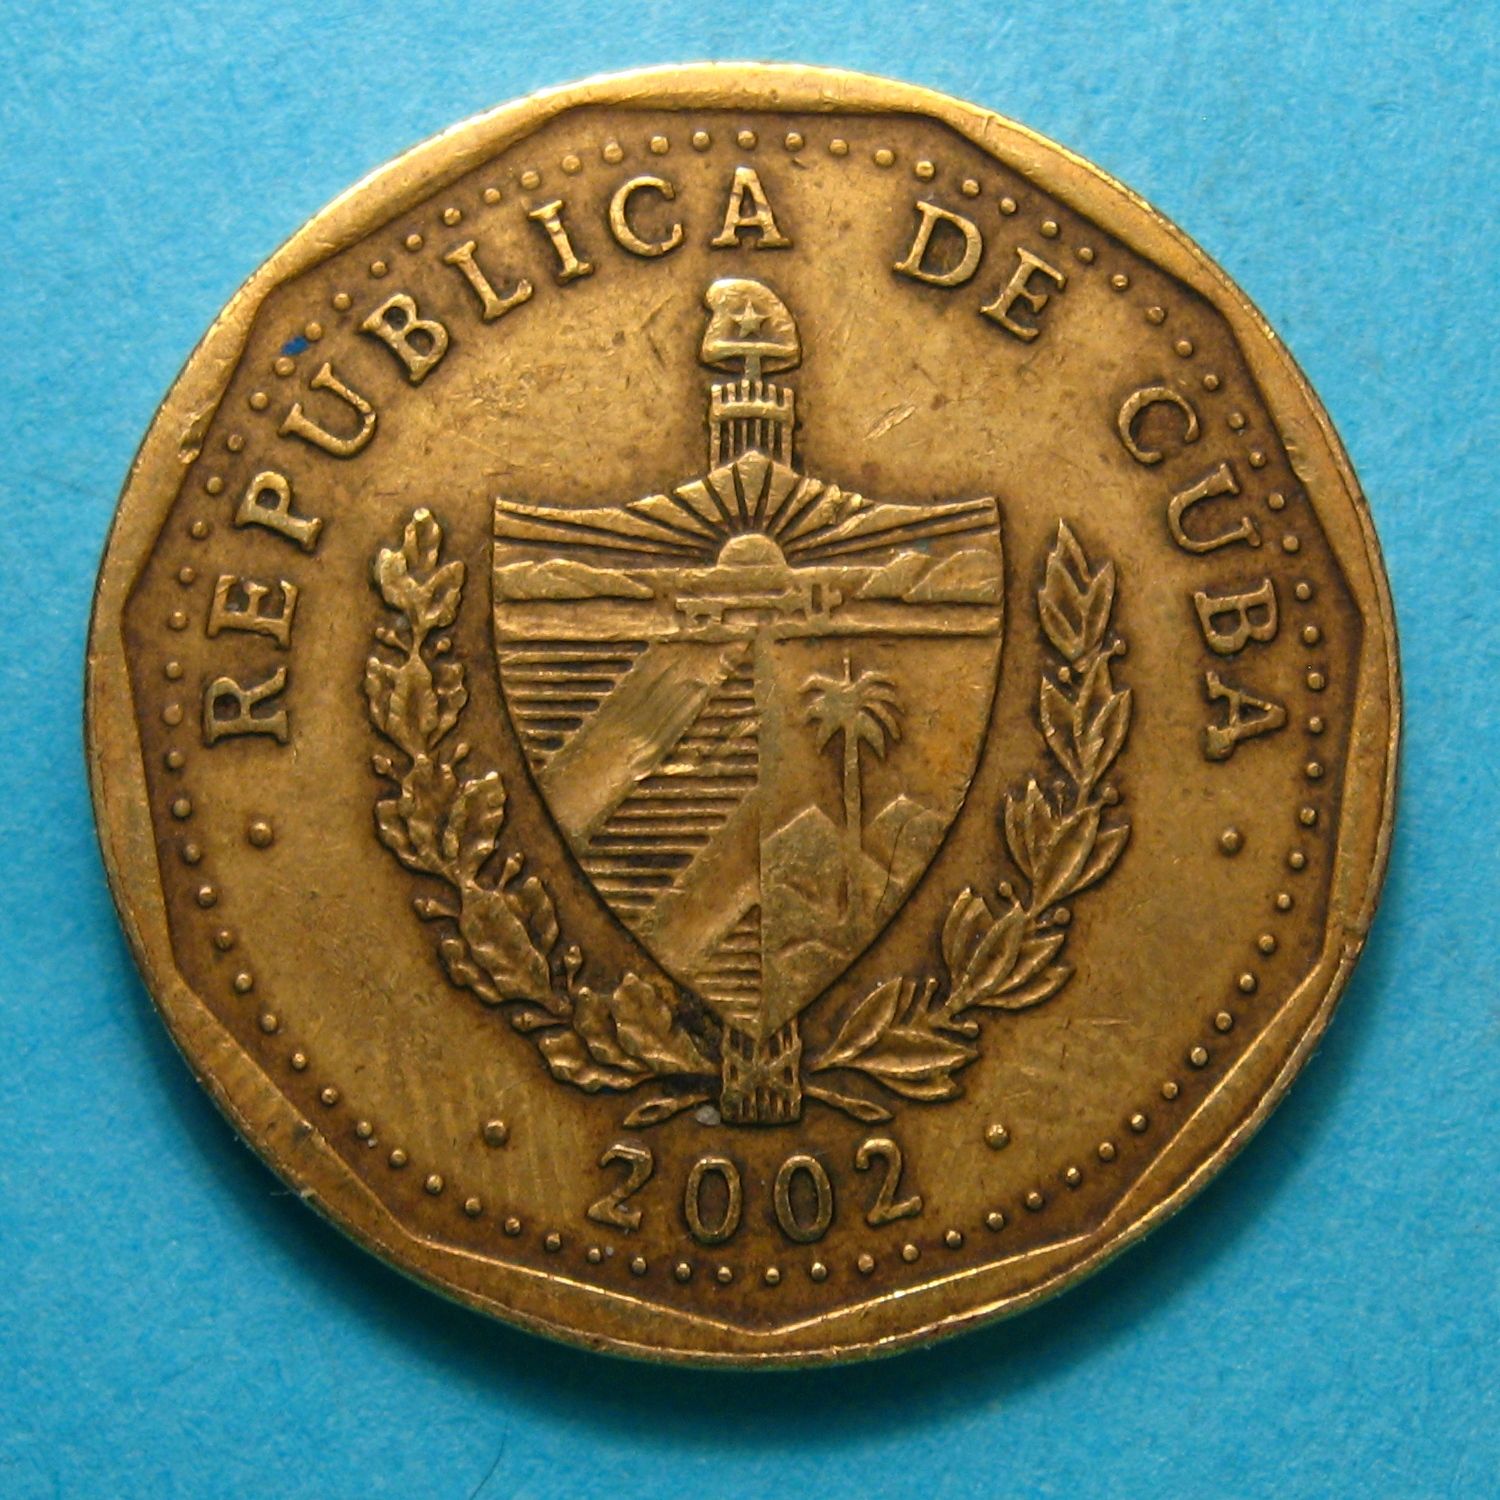 1 peso 2002 Cuba (2).jpg